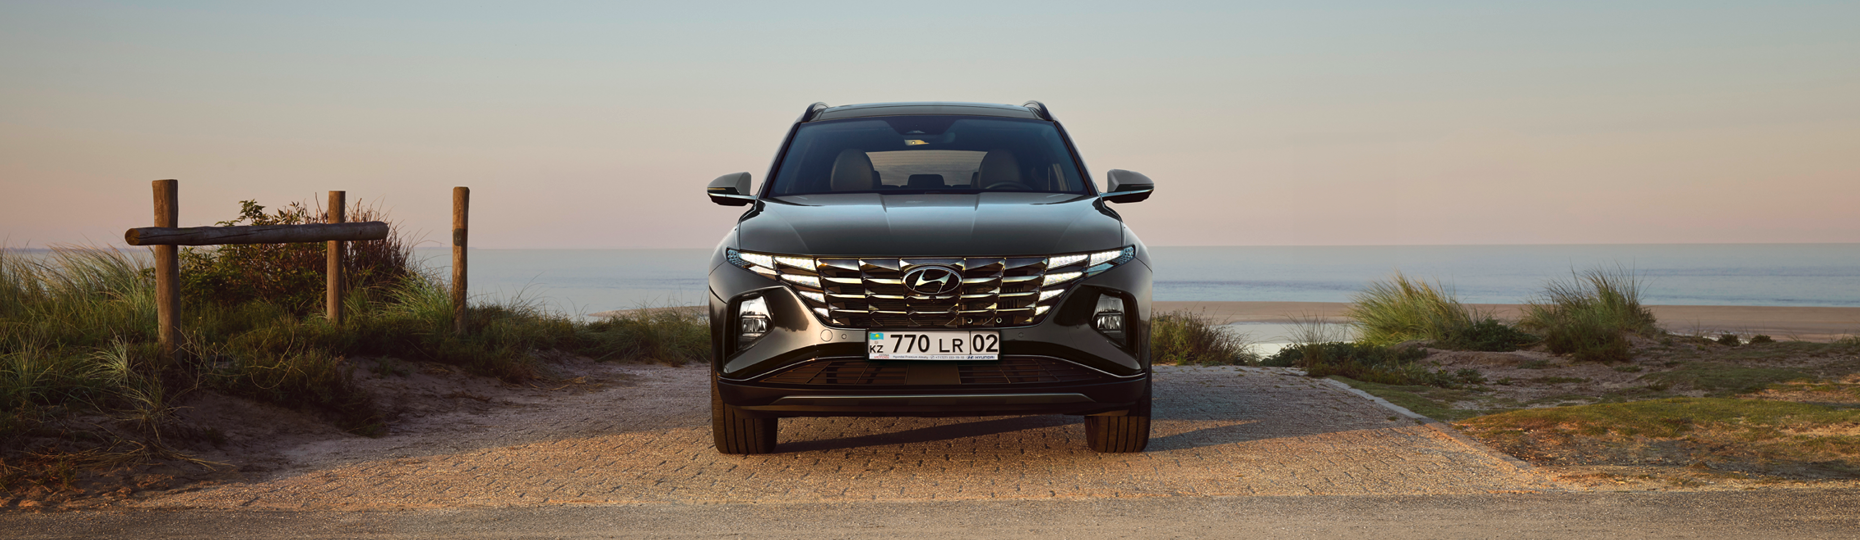 Купить новый Hyundai Tucson 2022-2023 у официального дилера в Караганде